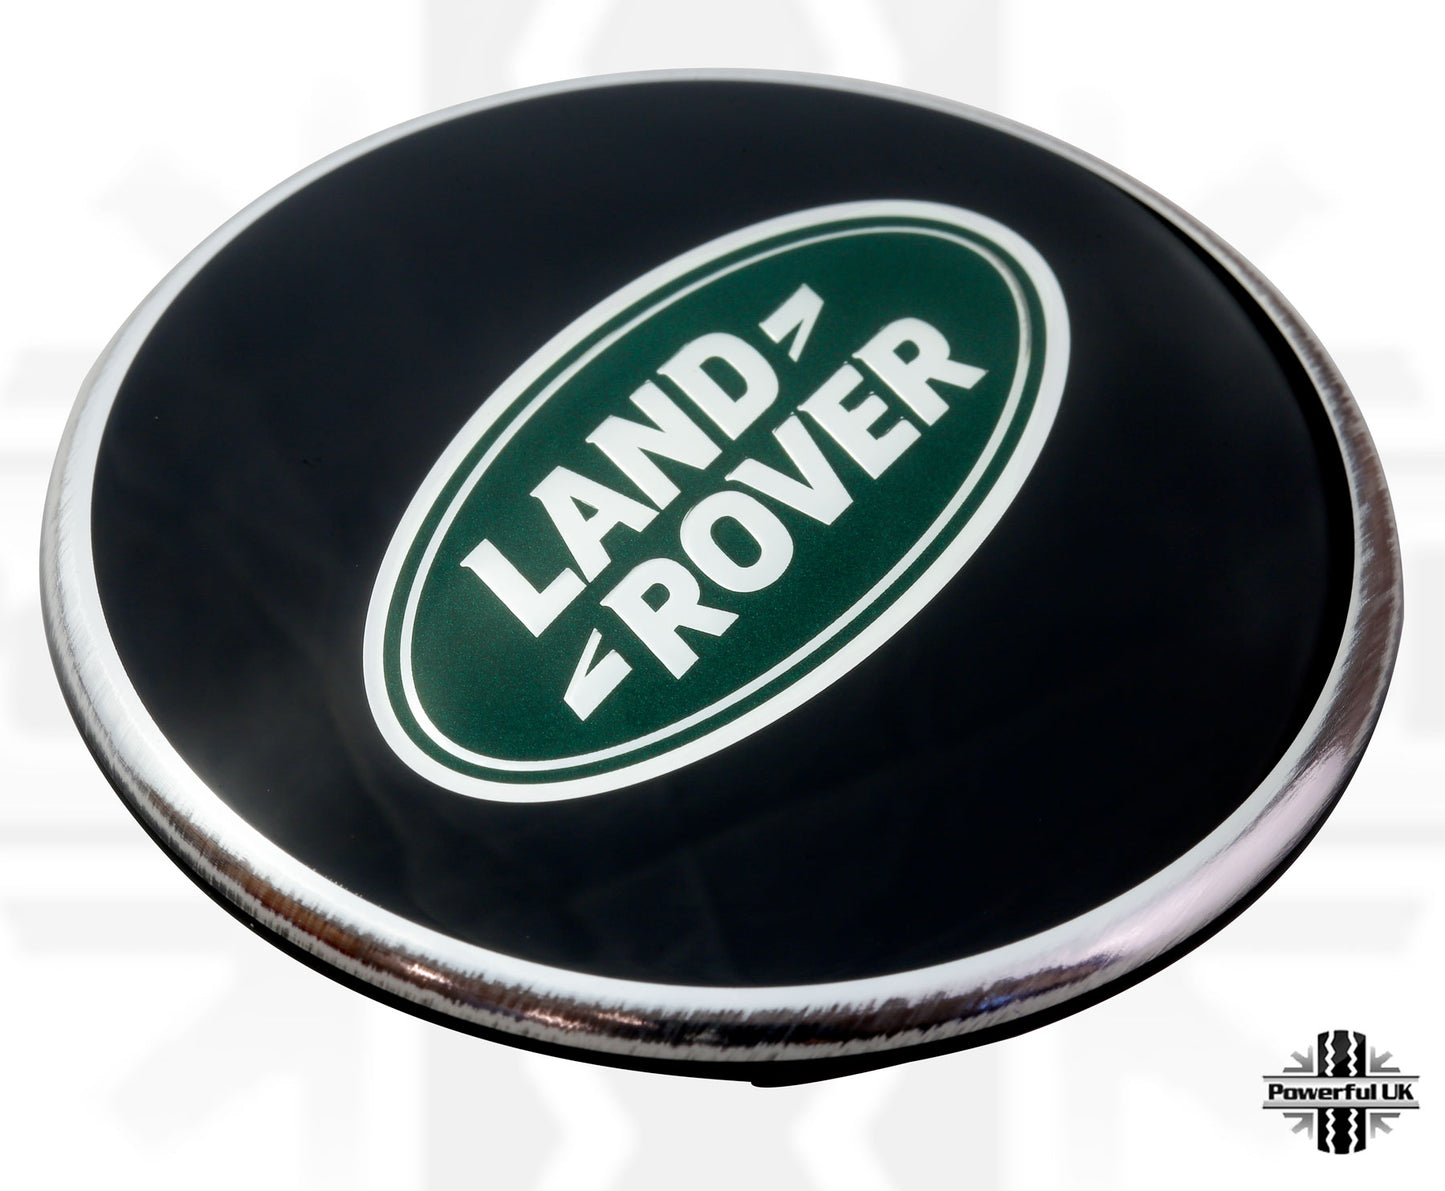 Genuine 4x Black & Green Alloy Wheel Center Caps for Range Rover Sport L494